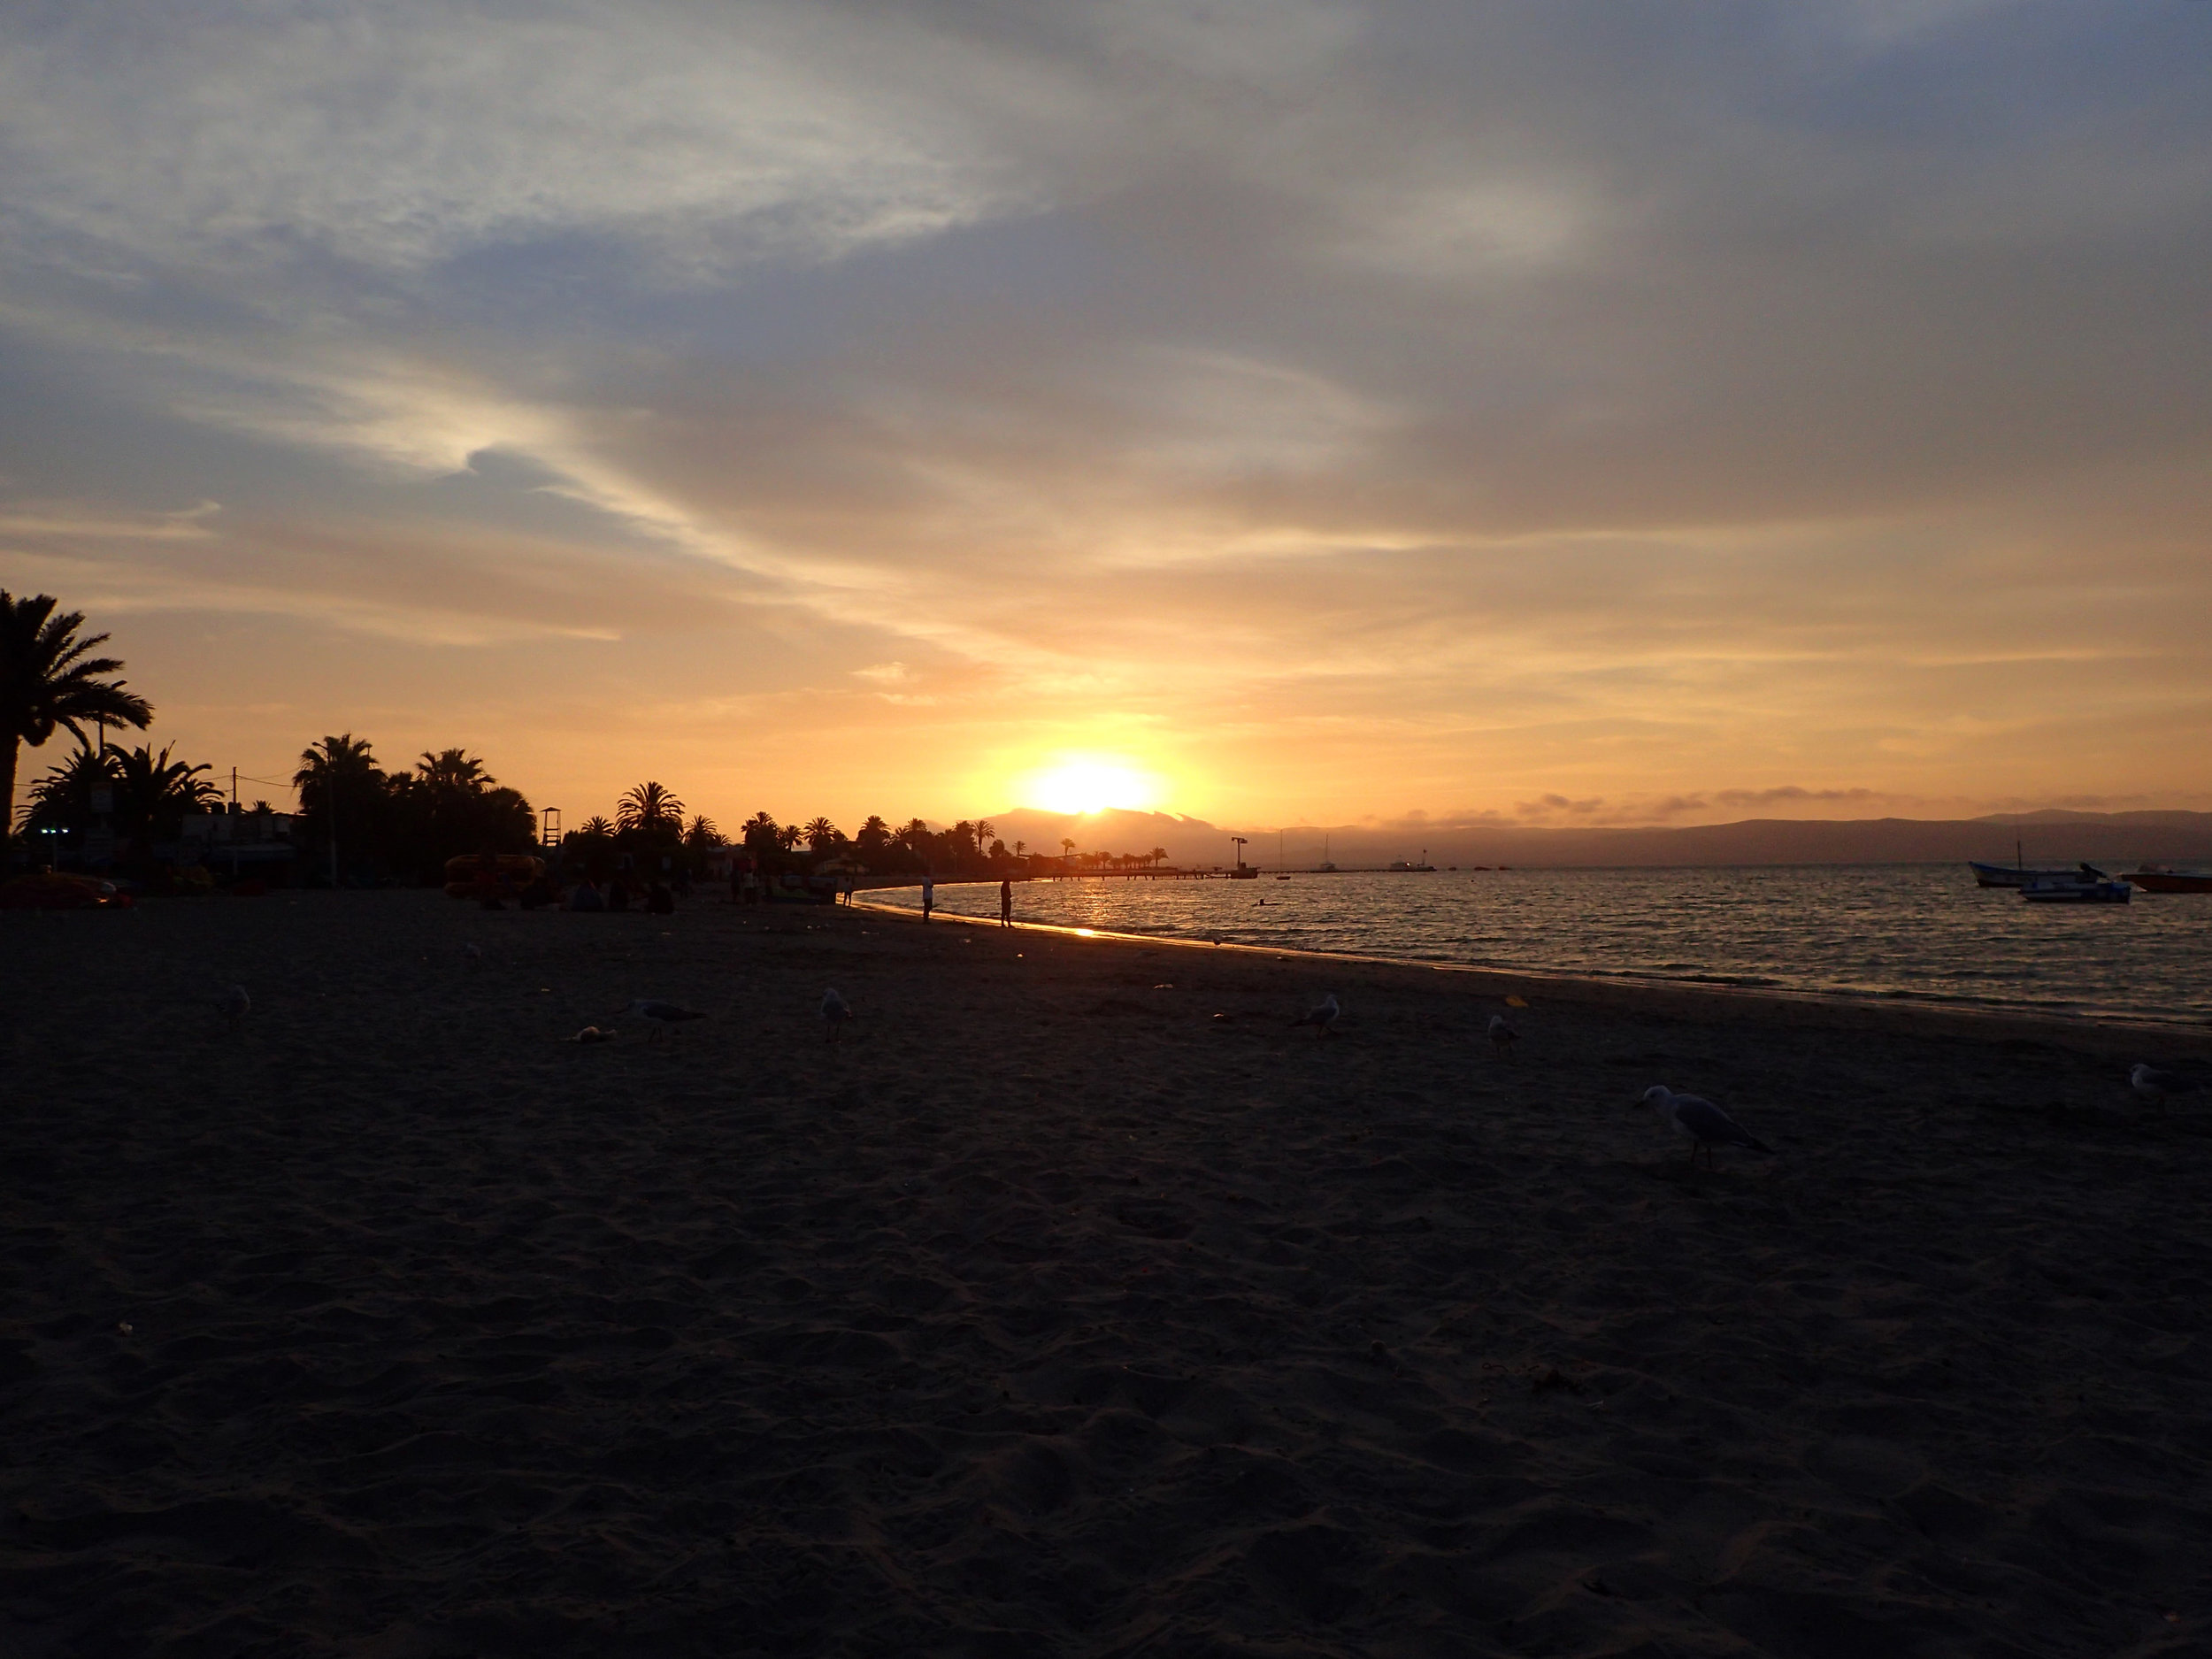 sunset from Paracas beach.jpg